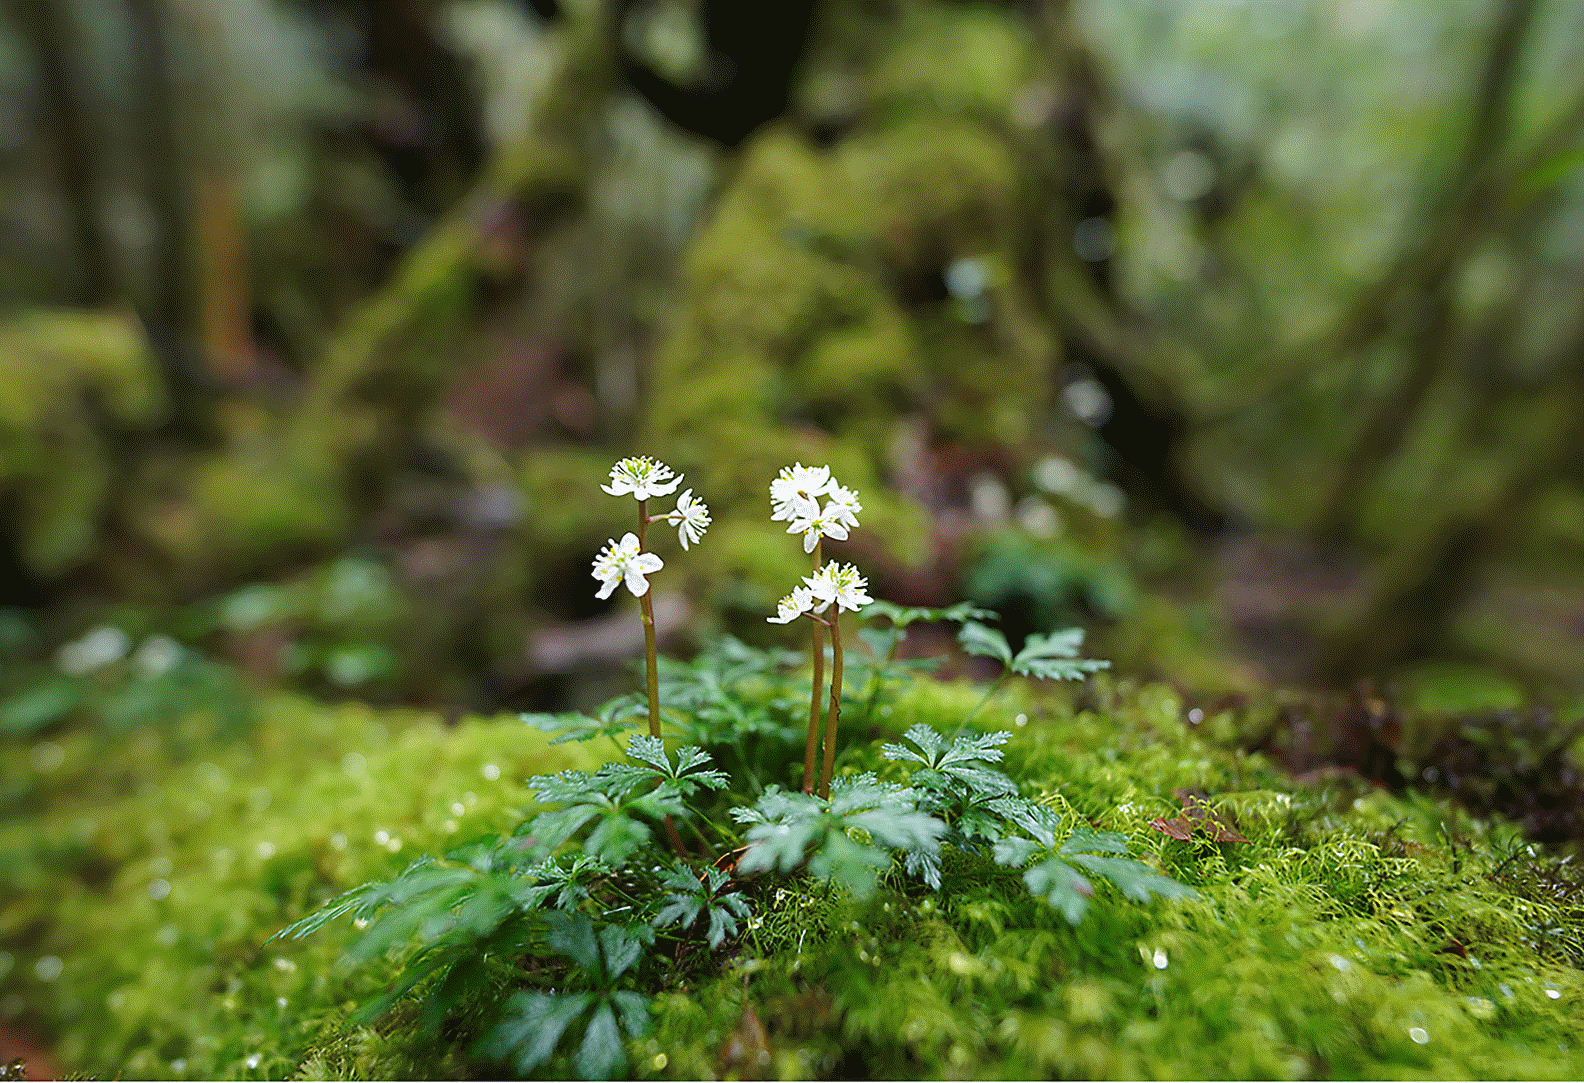 Afbeelding van een kleine bloem op een rots in het bos scherp in beeld, met een grote vervaging op de voor- en achtergrond